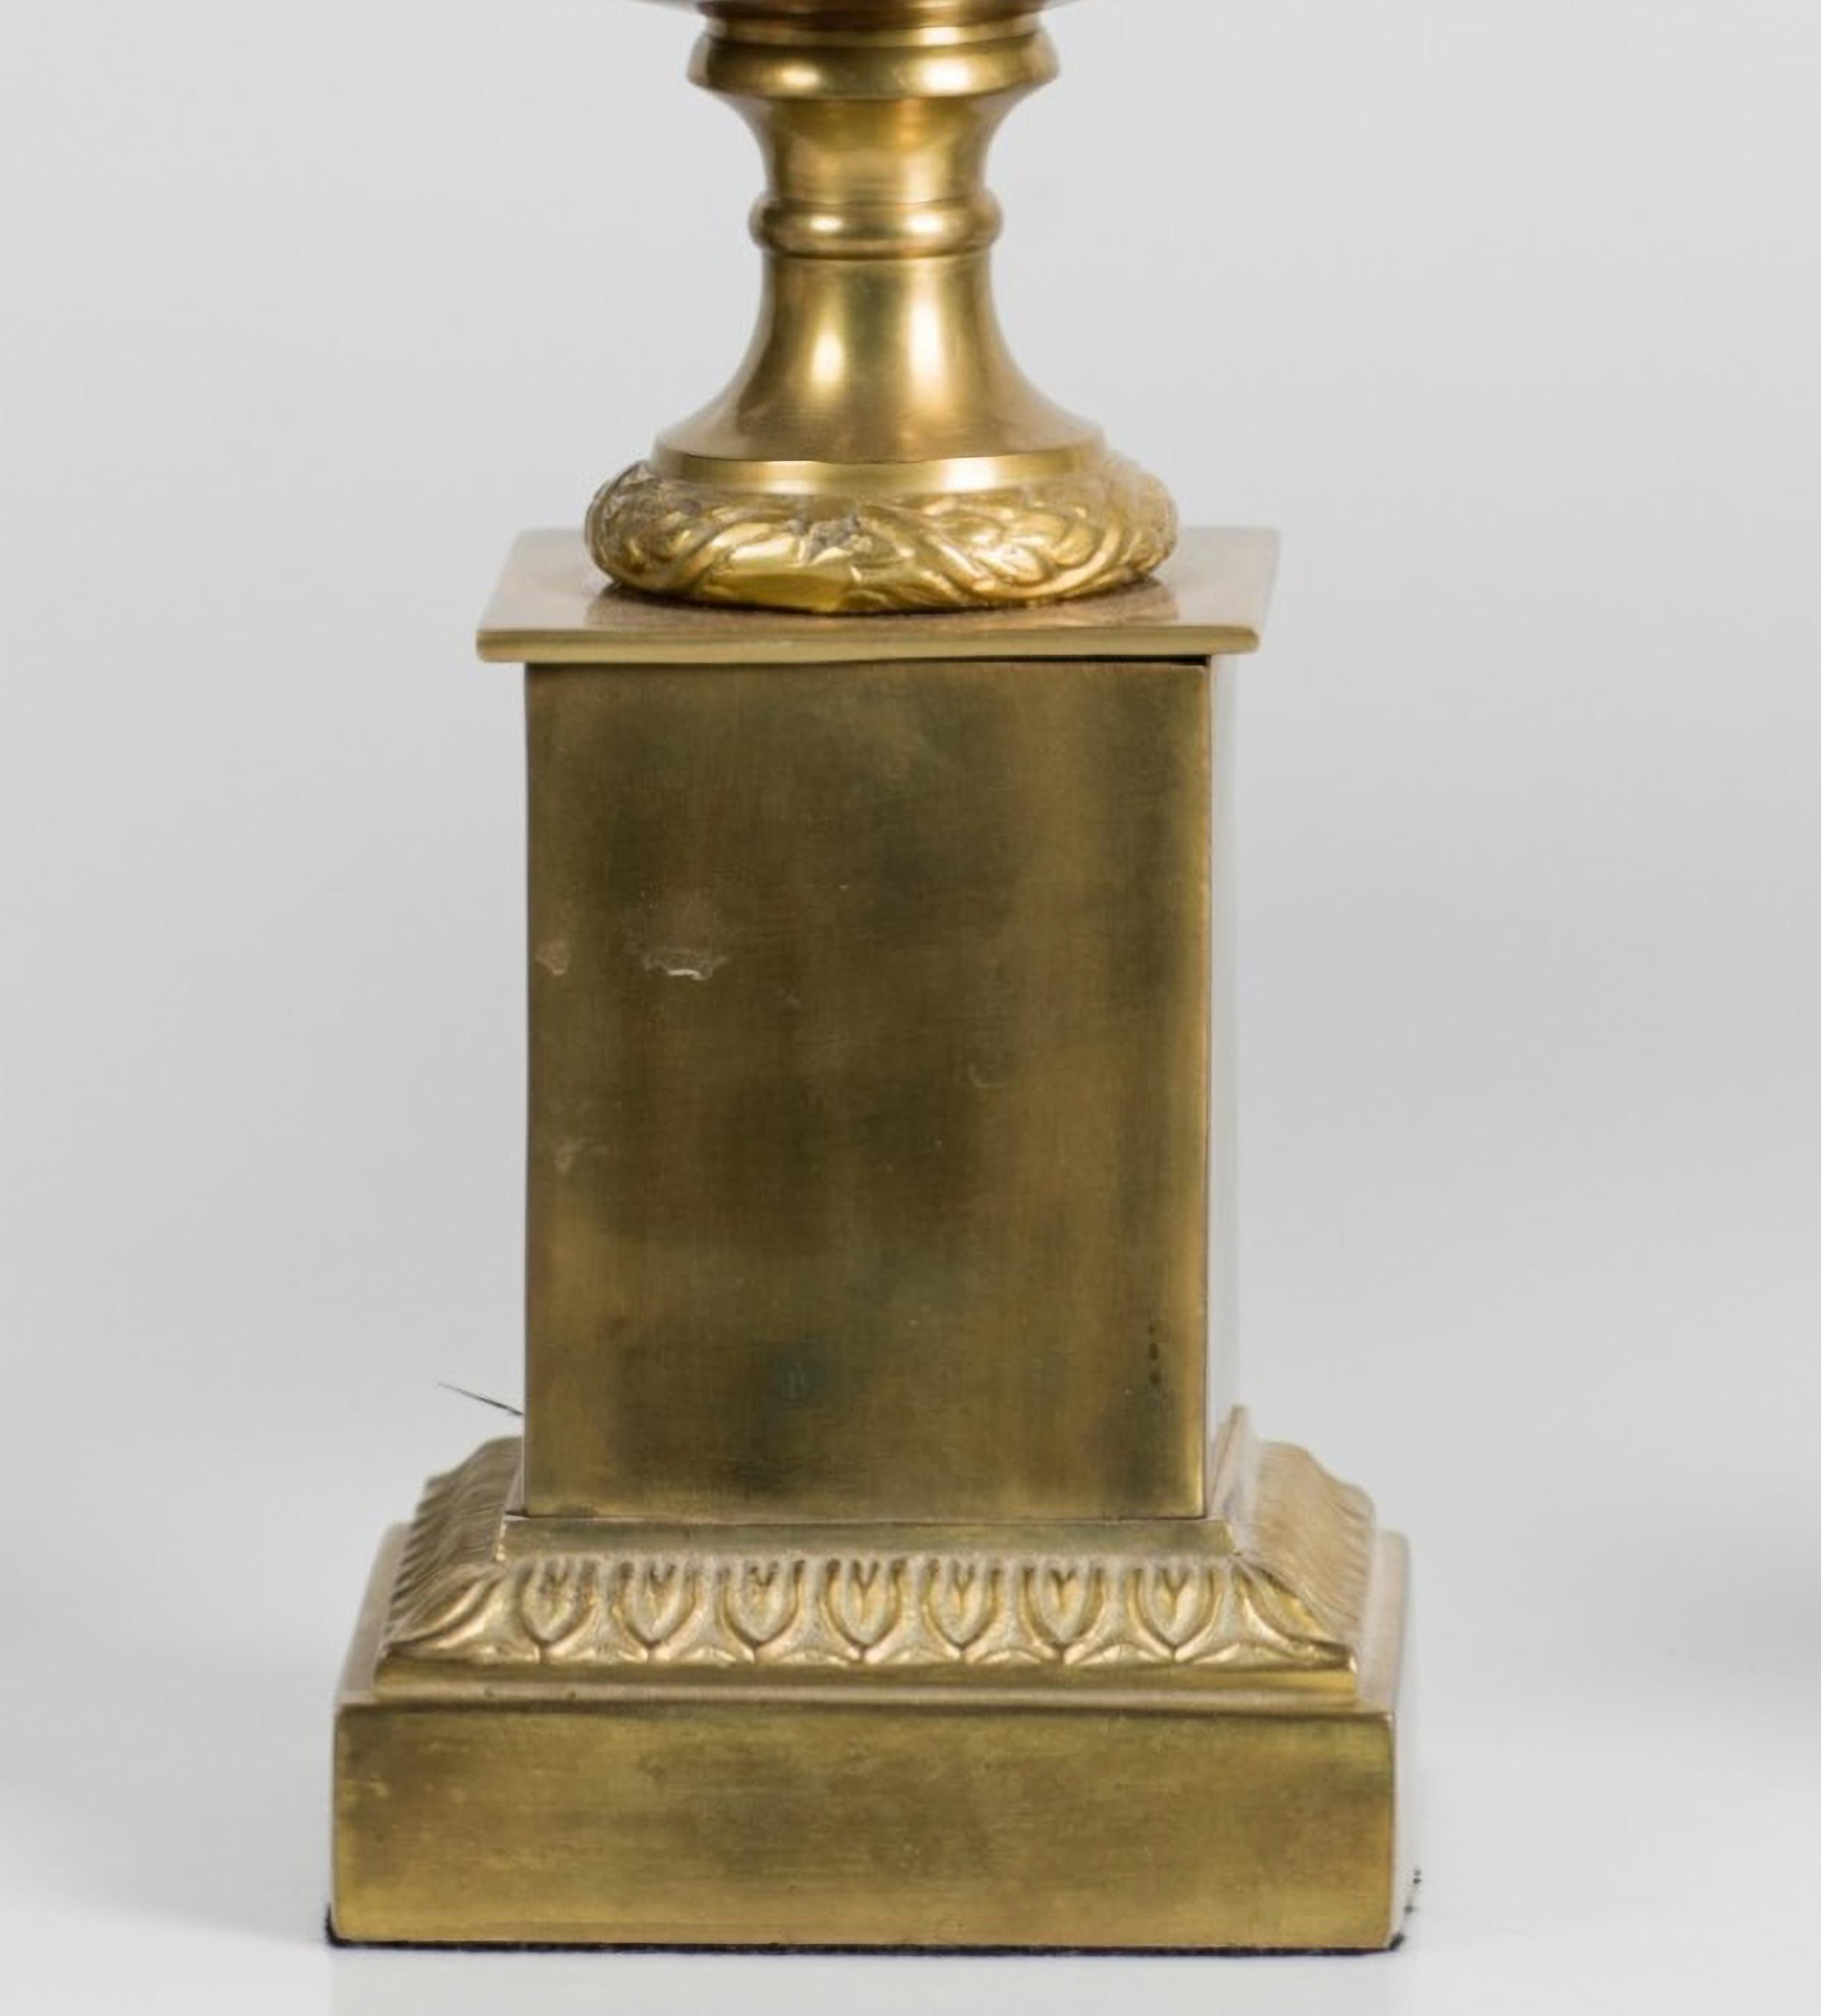 Paire de coupes décoratives italiennes du 20ème siècle
de métal doré et marbré.
avec couvercle garni d'ananas.
Dimensions : 35 cm chacun
Bon état